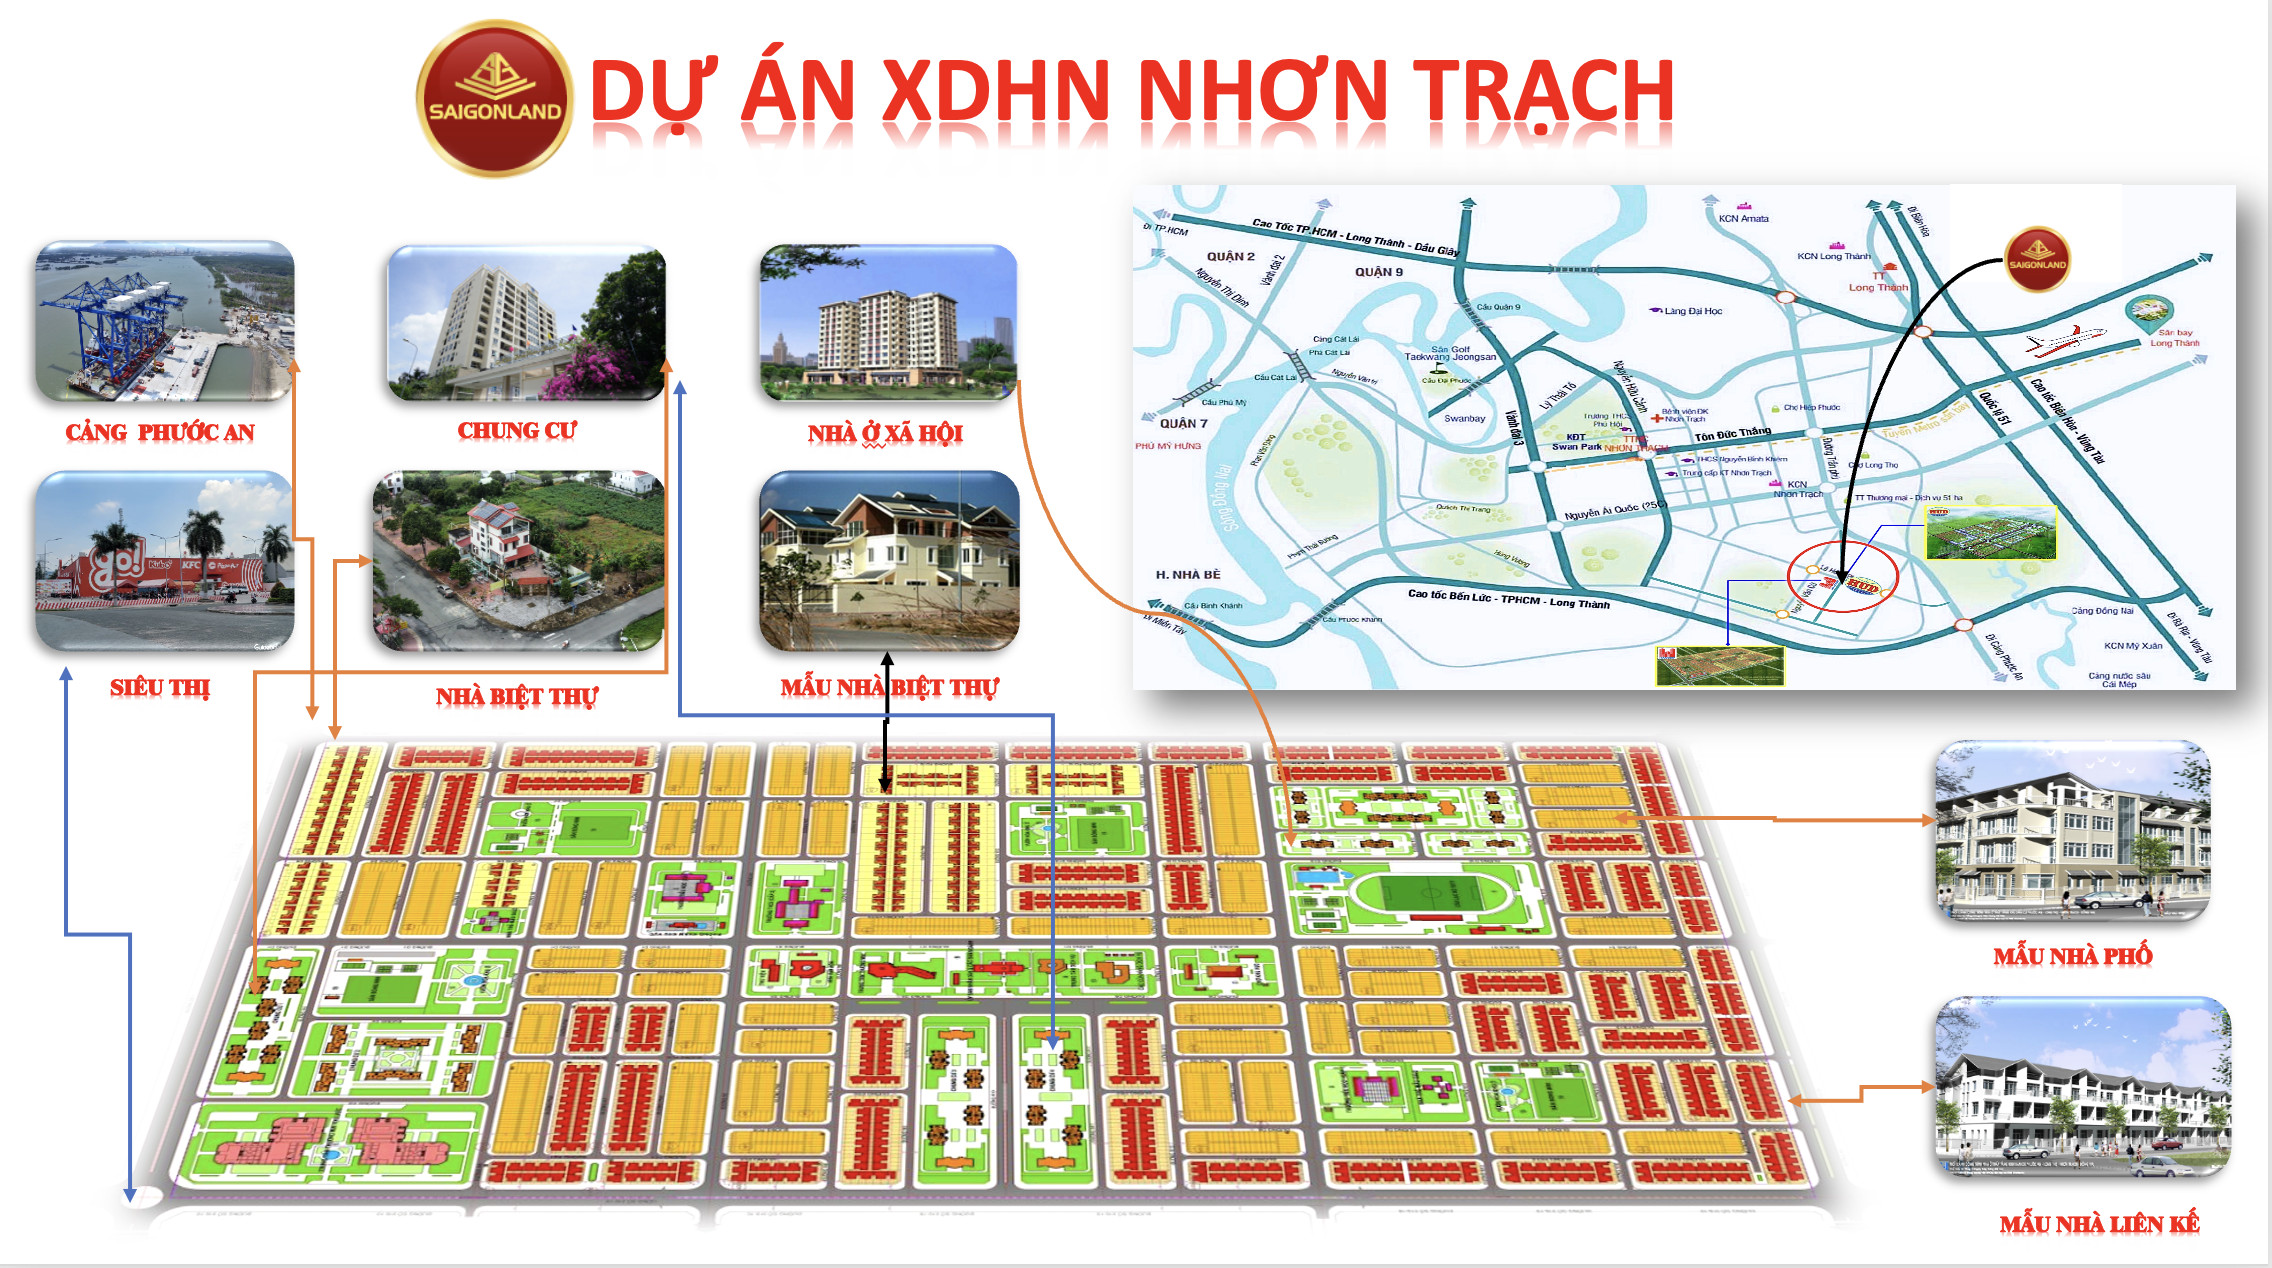 Saigonland Nhơn Trạch - Mua bán đất Nhơn Trạch - Dự án Hud Nhơn Trạch Đồng Nai. - Ảnh 1